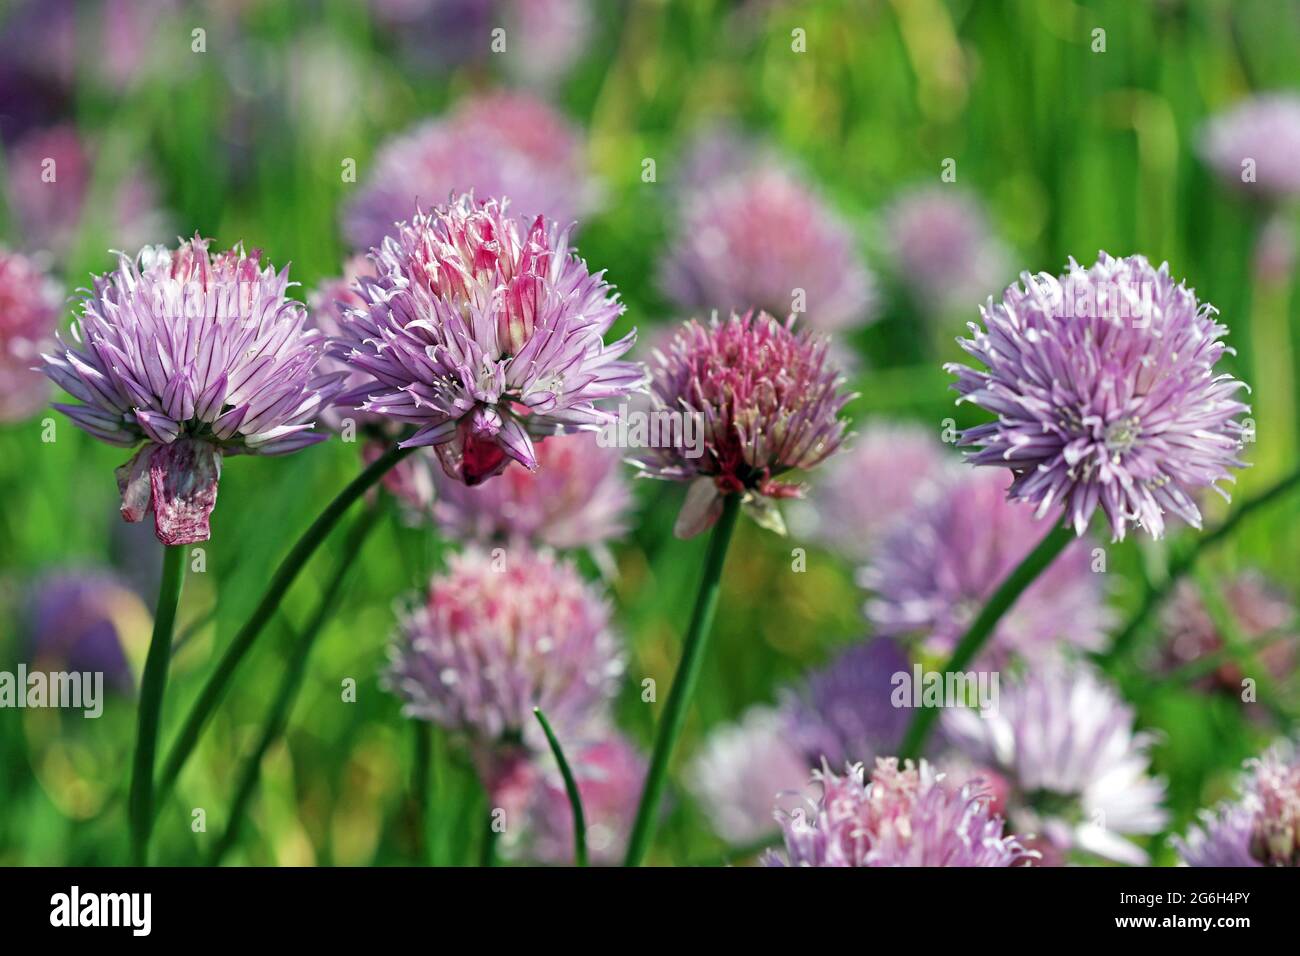 Un gruppo di erba cipollina fiorita (Allium Schoenoprasum); piccolo allio di lavanda che hanno largo uso culinario. Fotografato in un giardino inglese nel mese di giugno Foto Stock